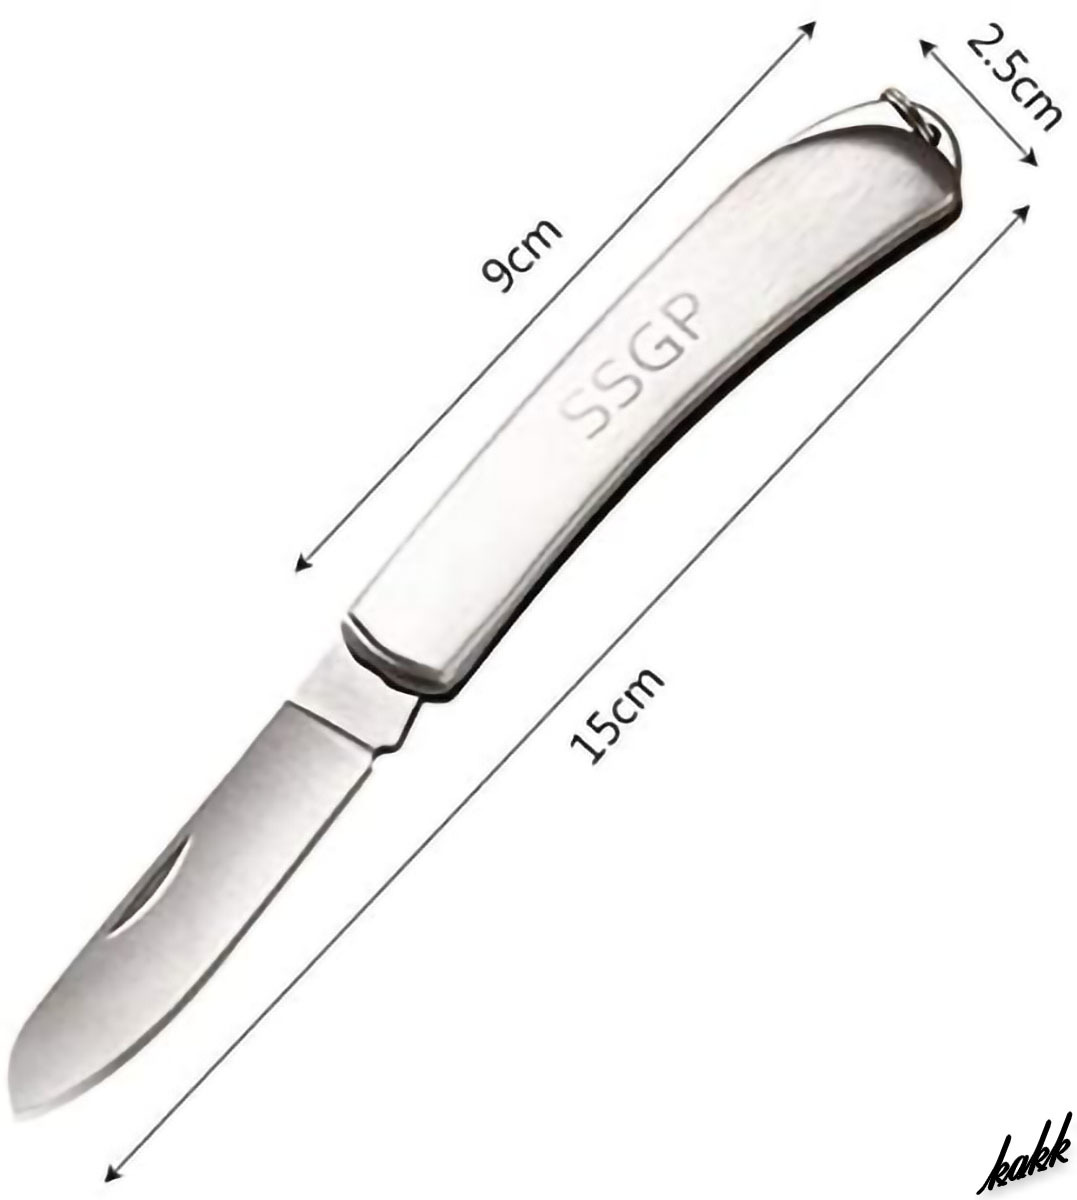 【コンパクトステンレスナイフ】 フォールディングナイフ 折りたたみ式 ステンレスシルバー 防錆 簡単お手入れ クール アウトドア